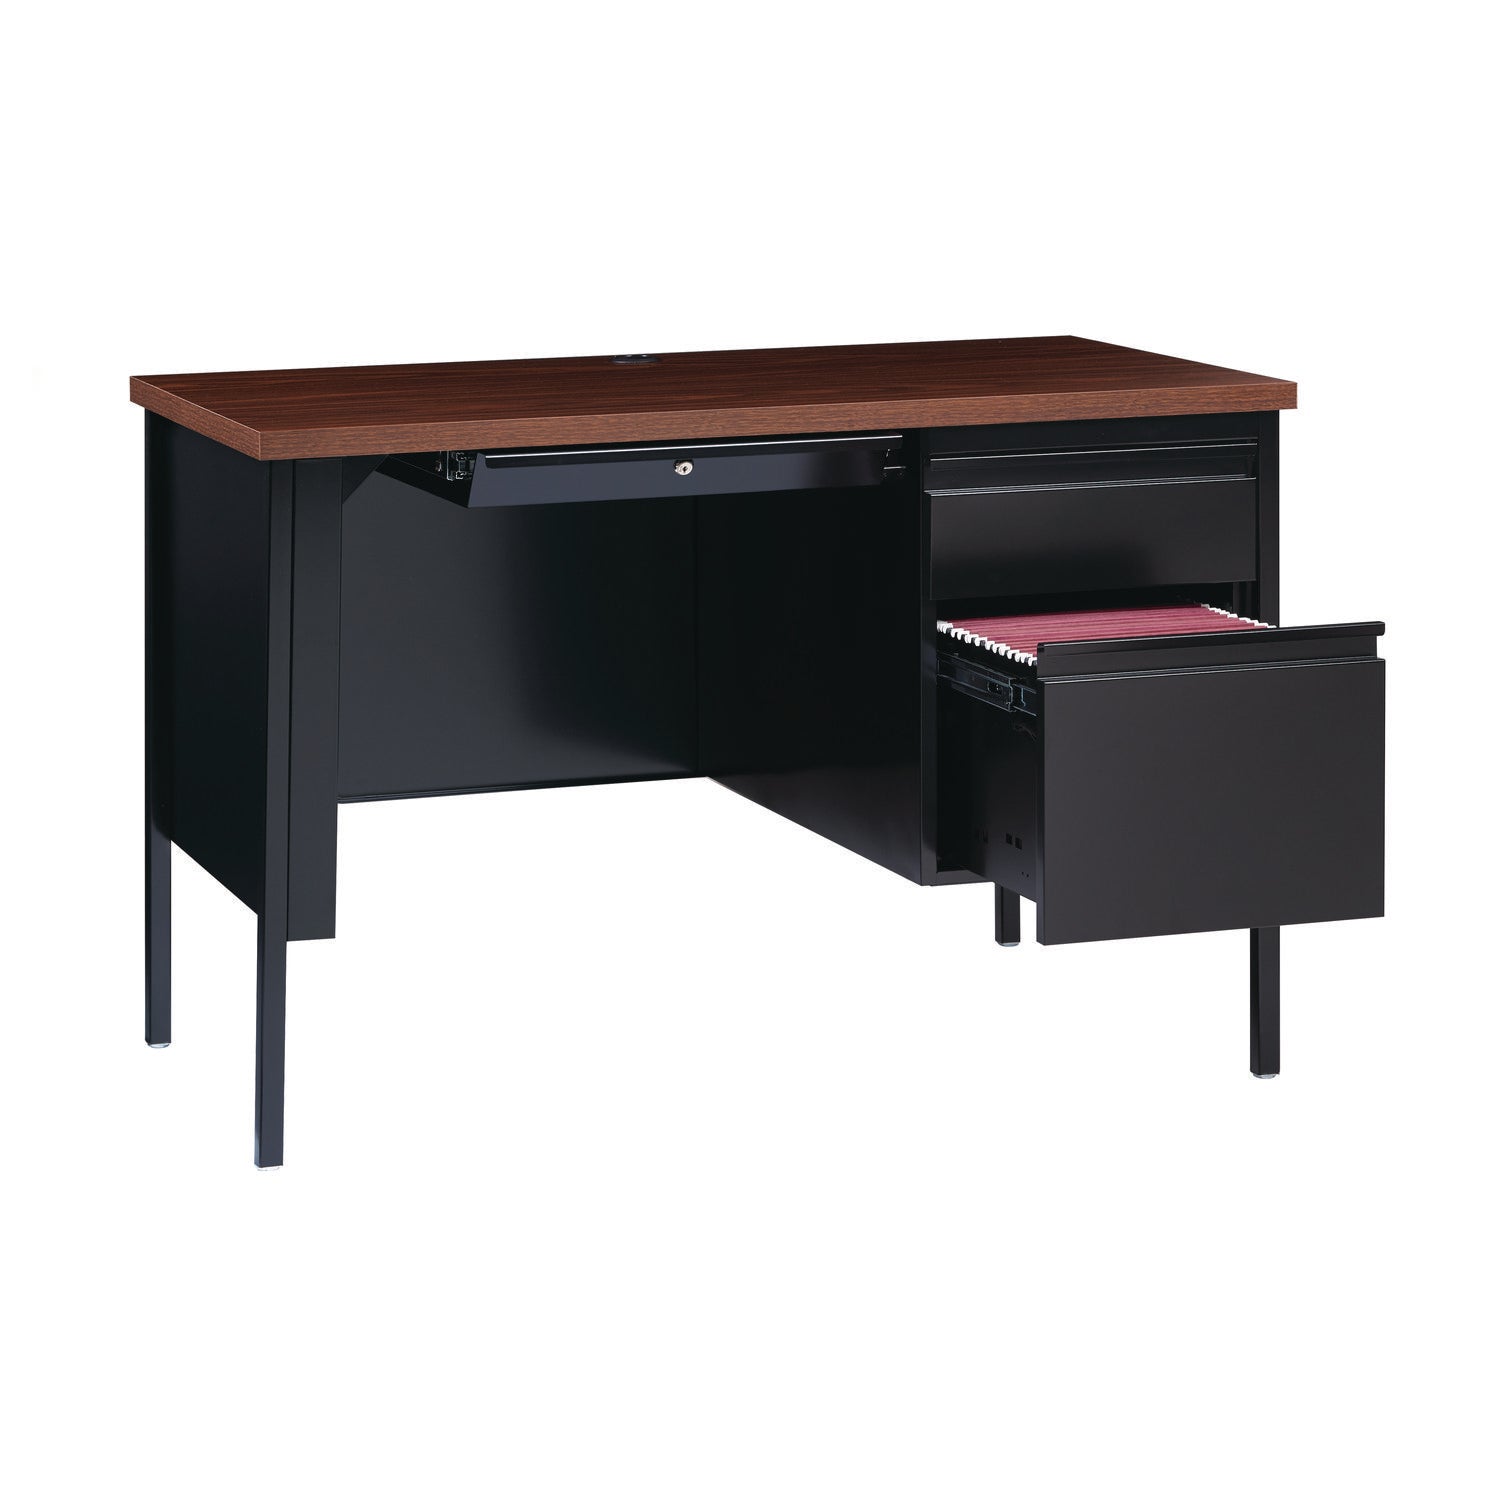 single-pedestal-steel-desk-455-x-24-x-295-mocha-black-black-legs_alehsd4524bm - 8